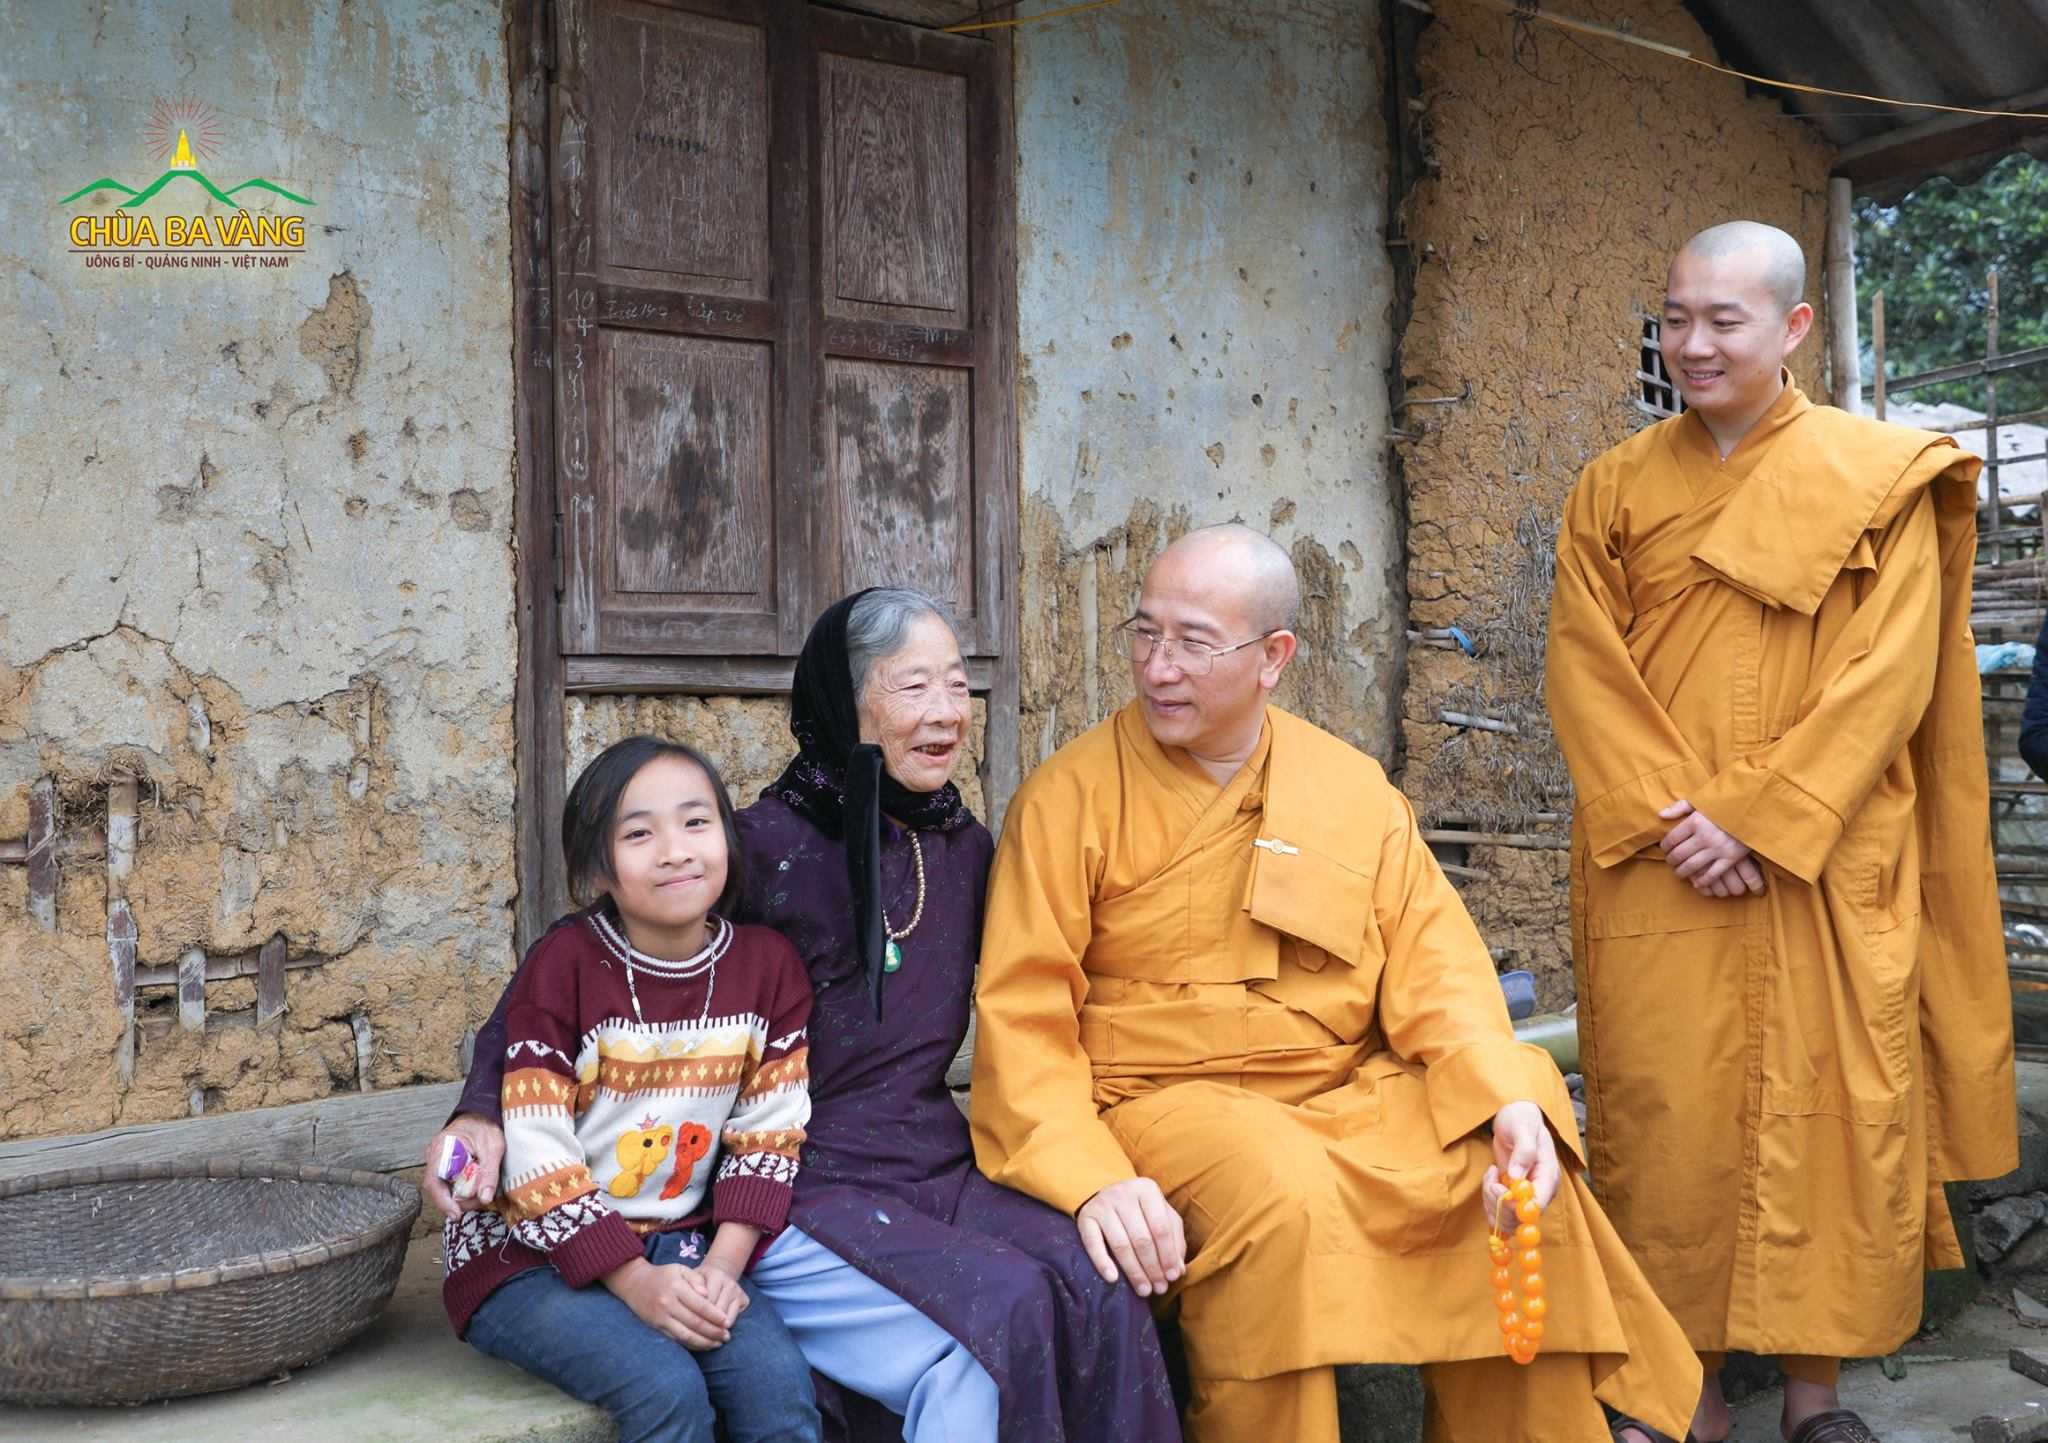 Sư Phụ Thích Trúc Thái Minh cùng chư Tăng chùa Ba Vàng trong chuyến từ thiện ở Lai Châu